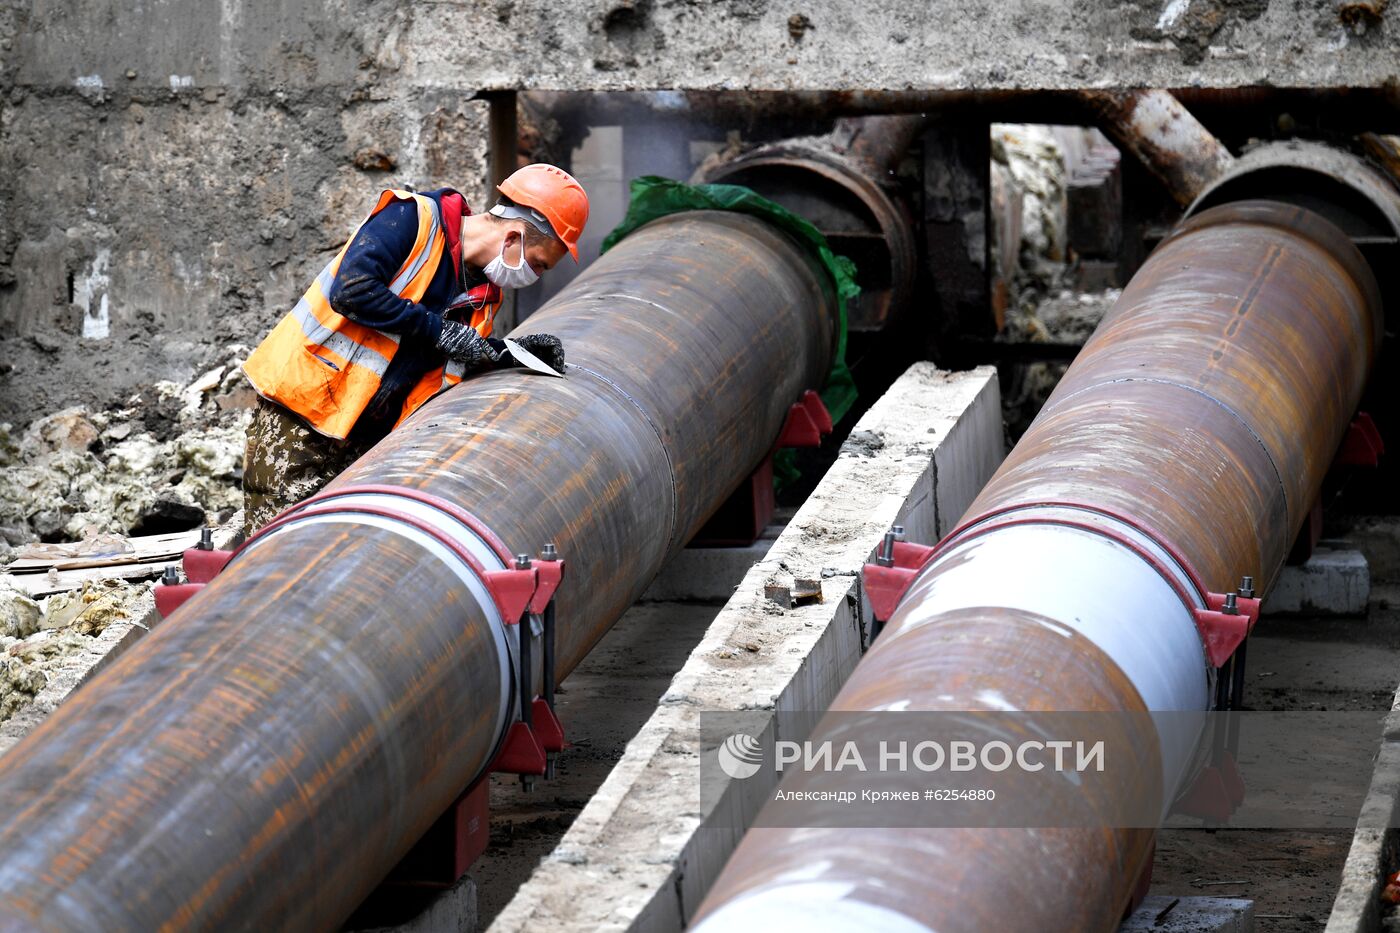 Ремонт участка магистральной теплосети в Новосибирске